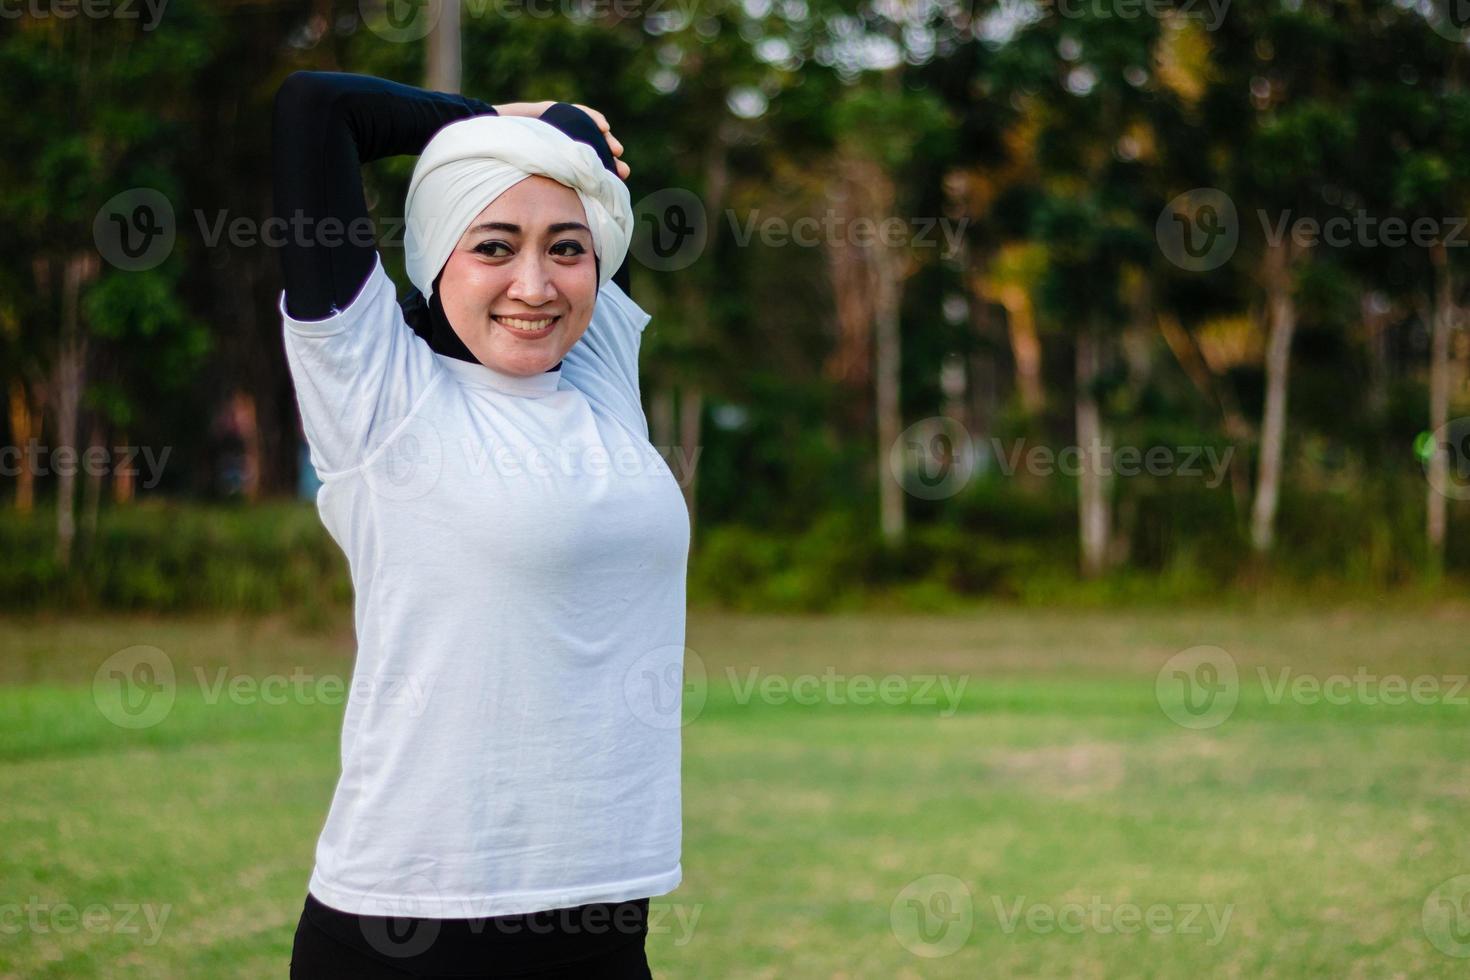 mujer agradable en hijab y ropa deportiva haciendo yoga y estiramiento. foto